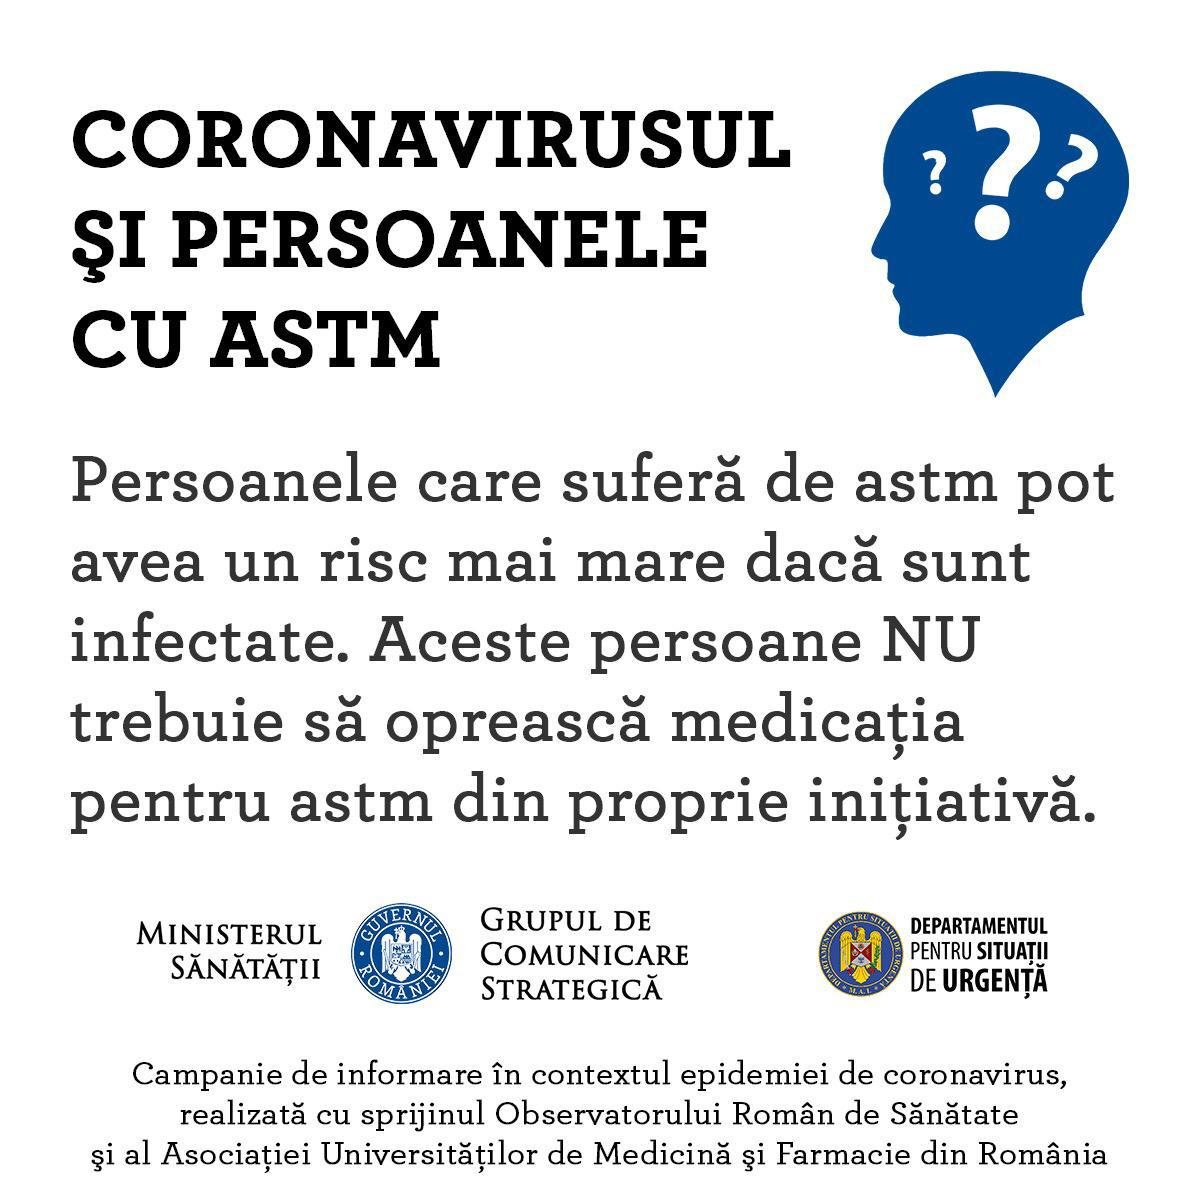 #STĂMACASĂ: Persoanele cu astm sunt sfătuite să rămână în locuințe